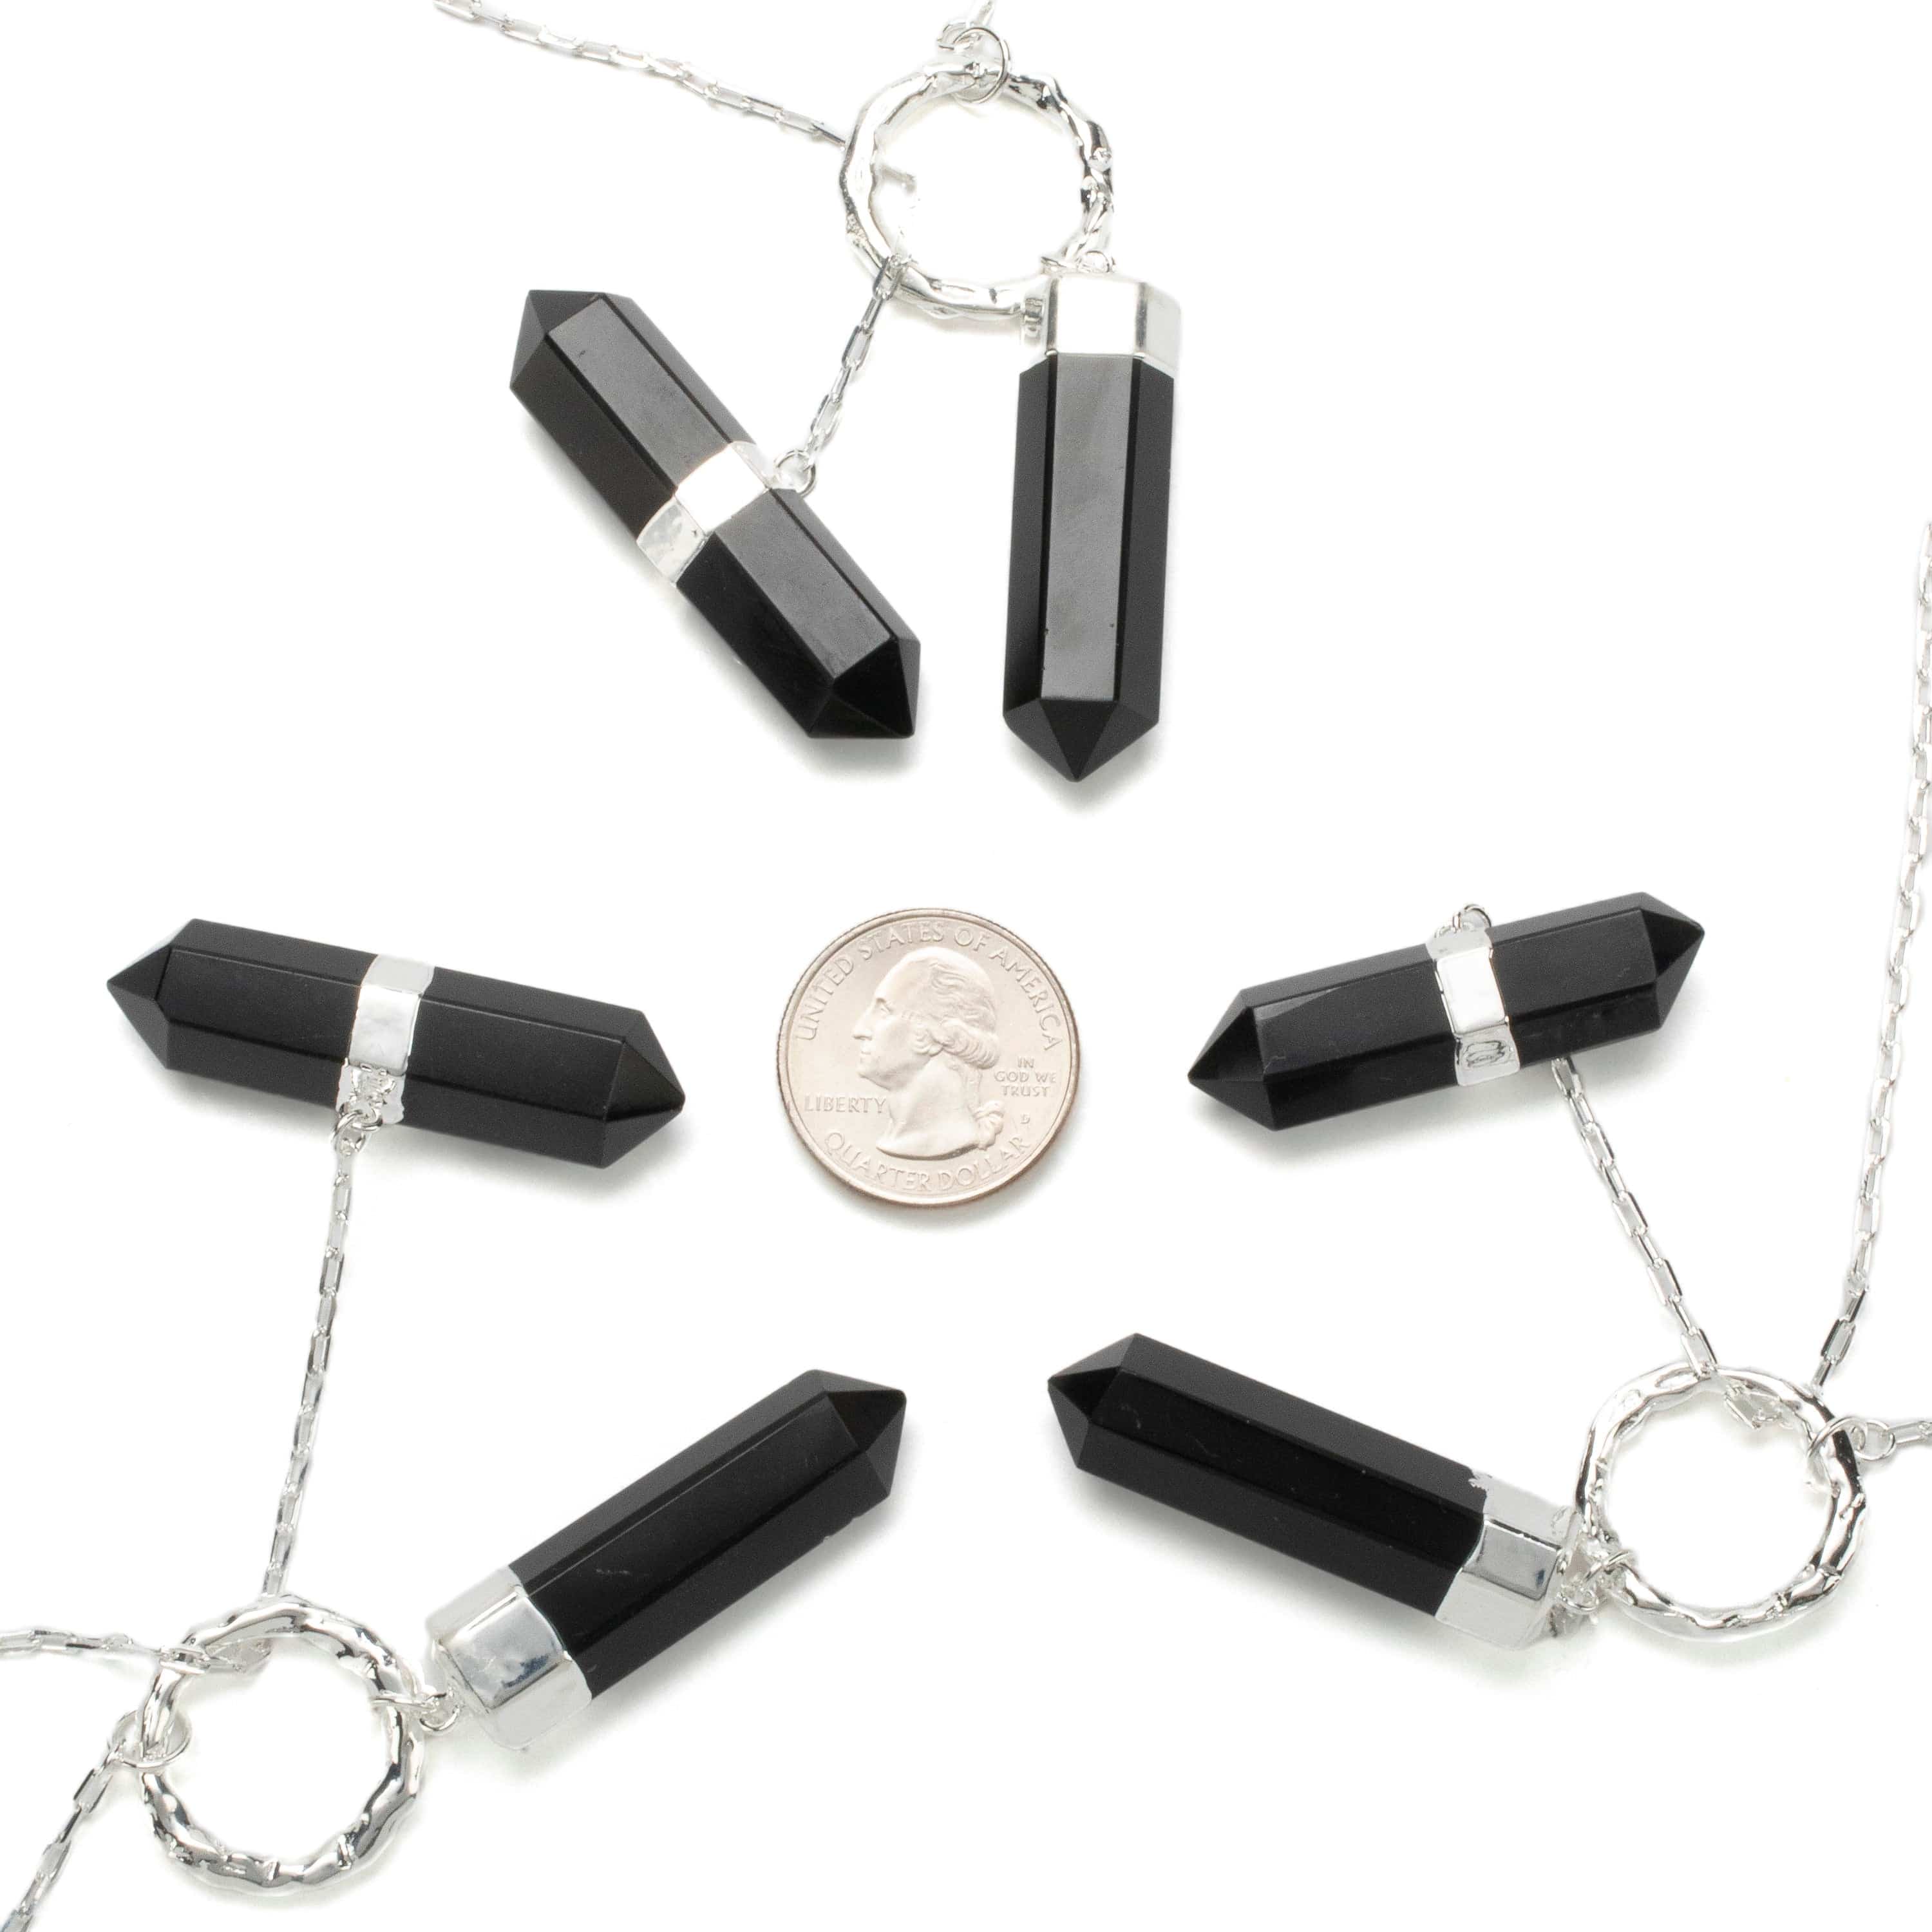 KALIFANO Crystal Jewelry Black Onyx Y Necklace CJN-2022-BO